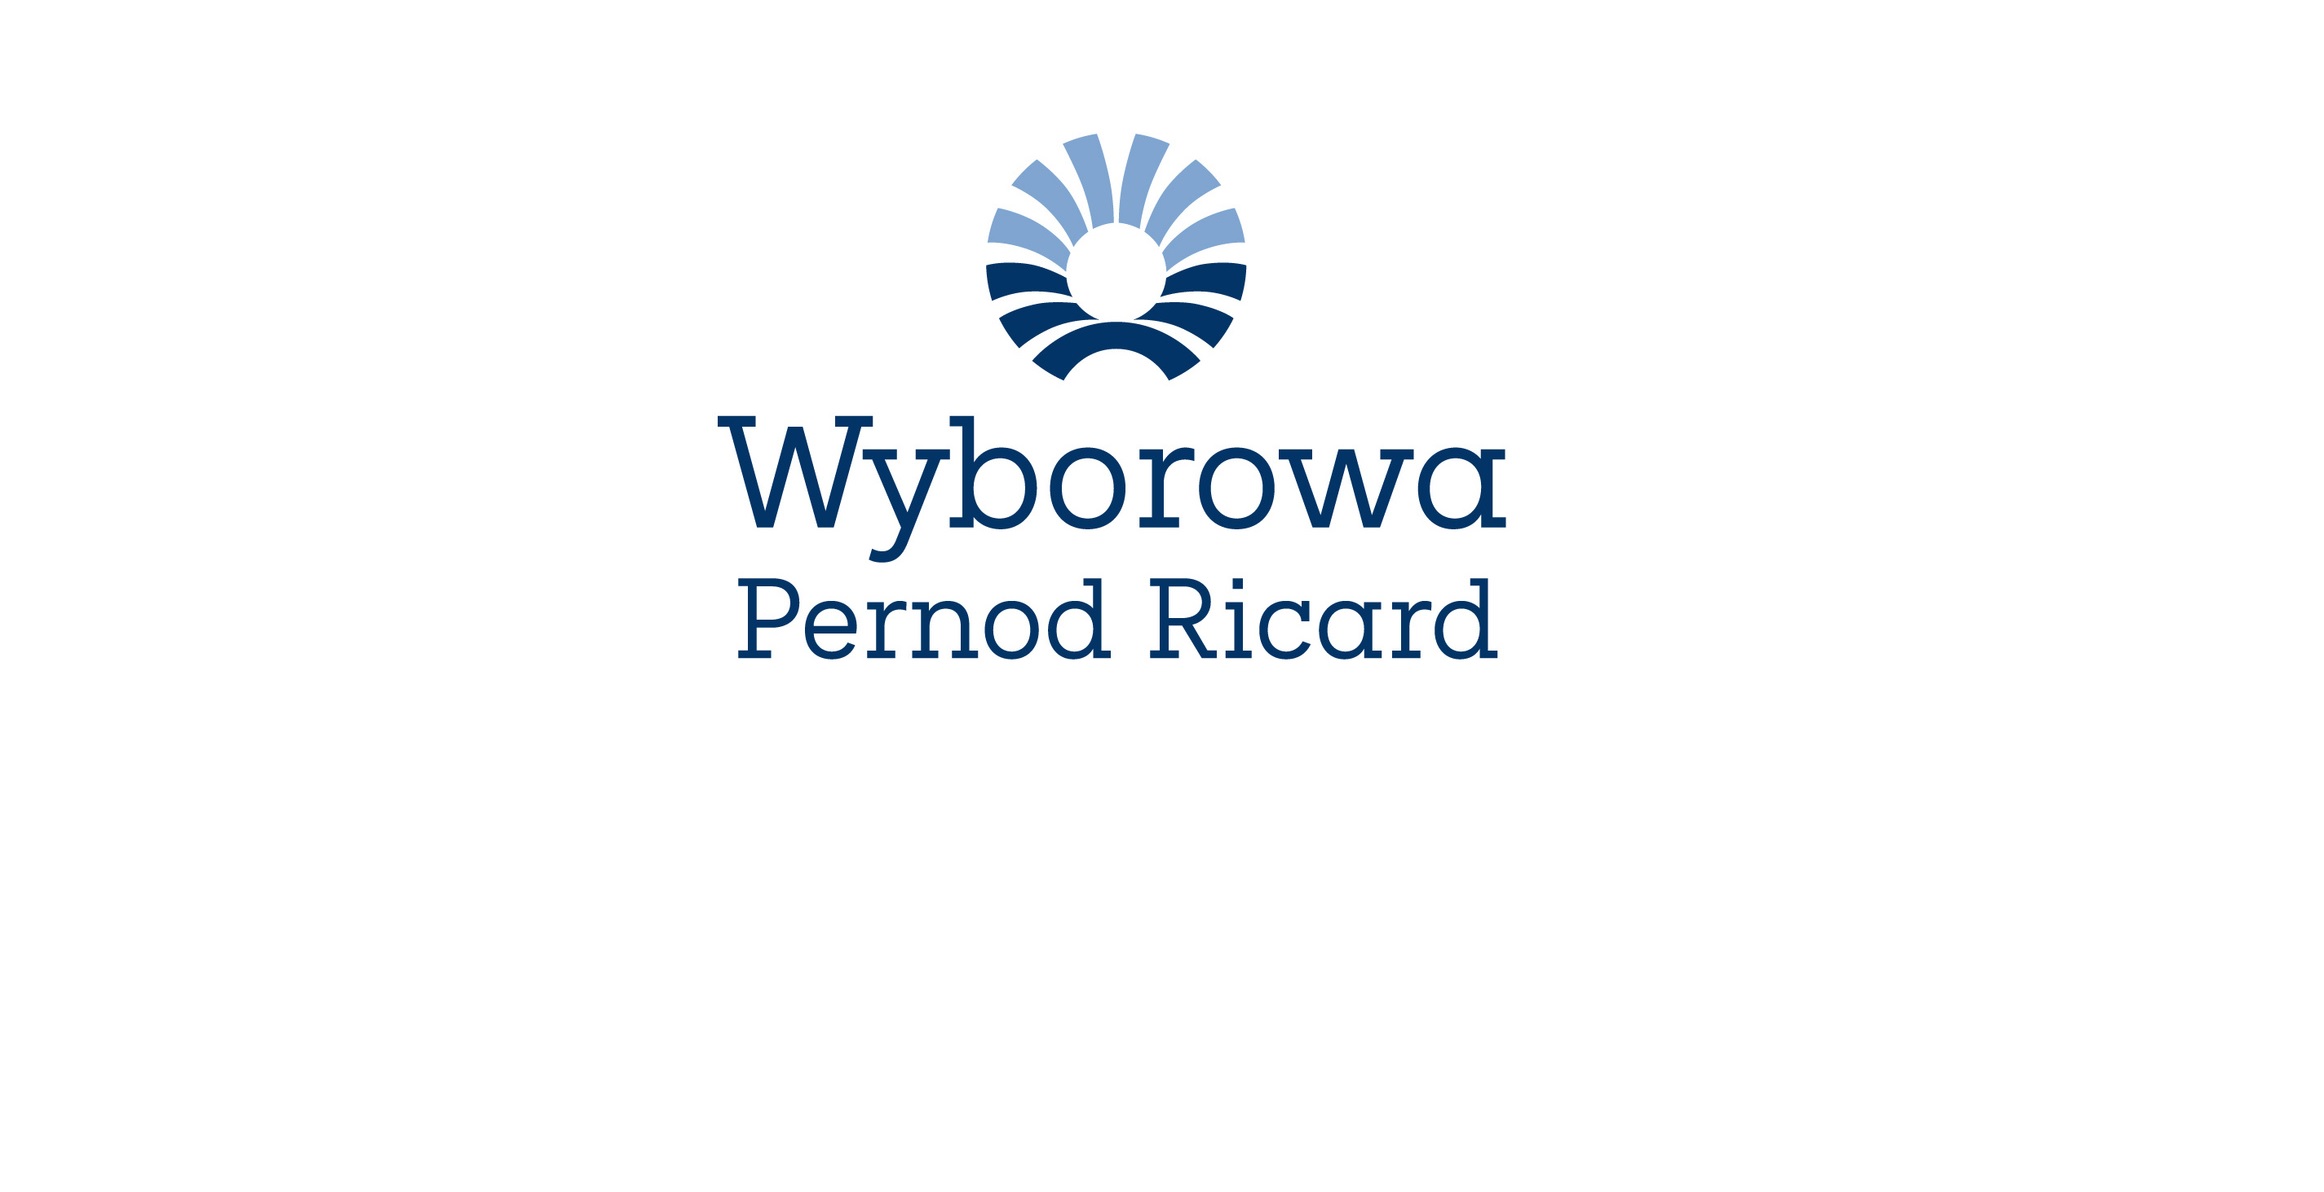 Wyborowa Pernod Ricard wprowadza cyfrowe etykiety, aby lepiej informować polskich konsumentów